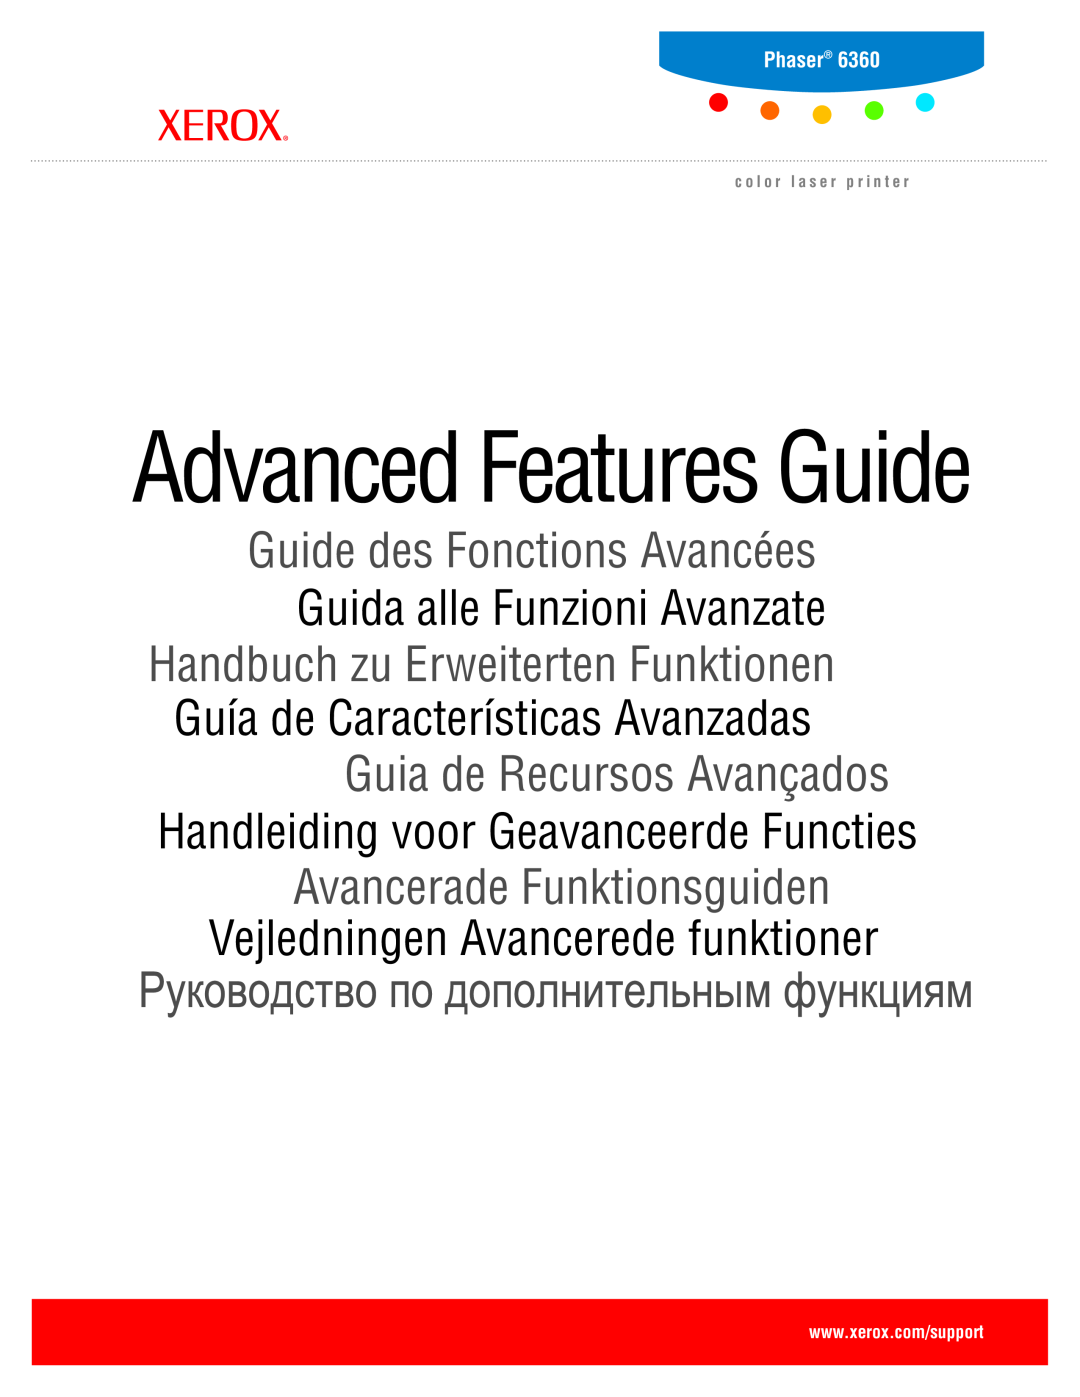 Xerox 6360 manual Advanced Features Guide, Vejledningen Avancerede funktioner 